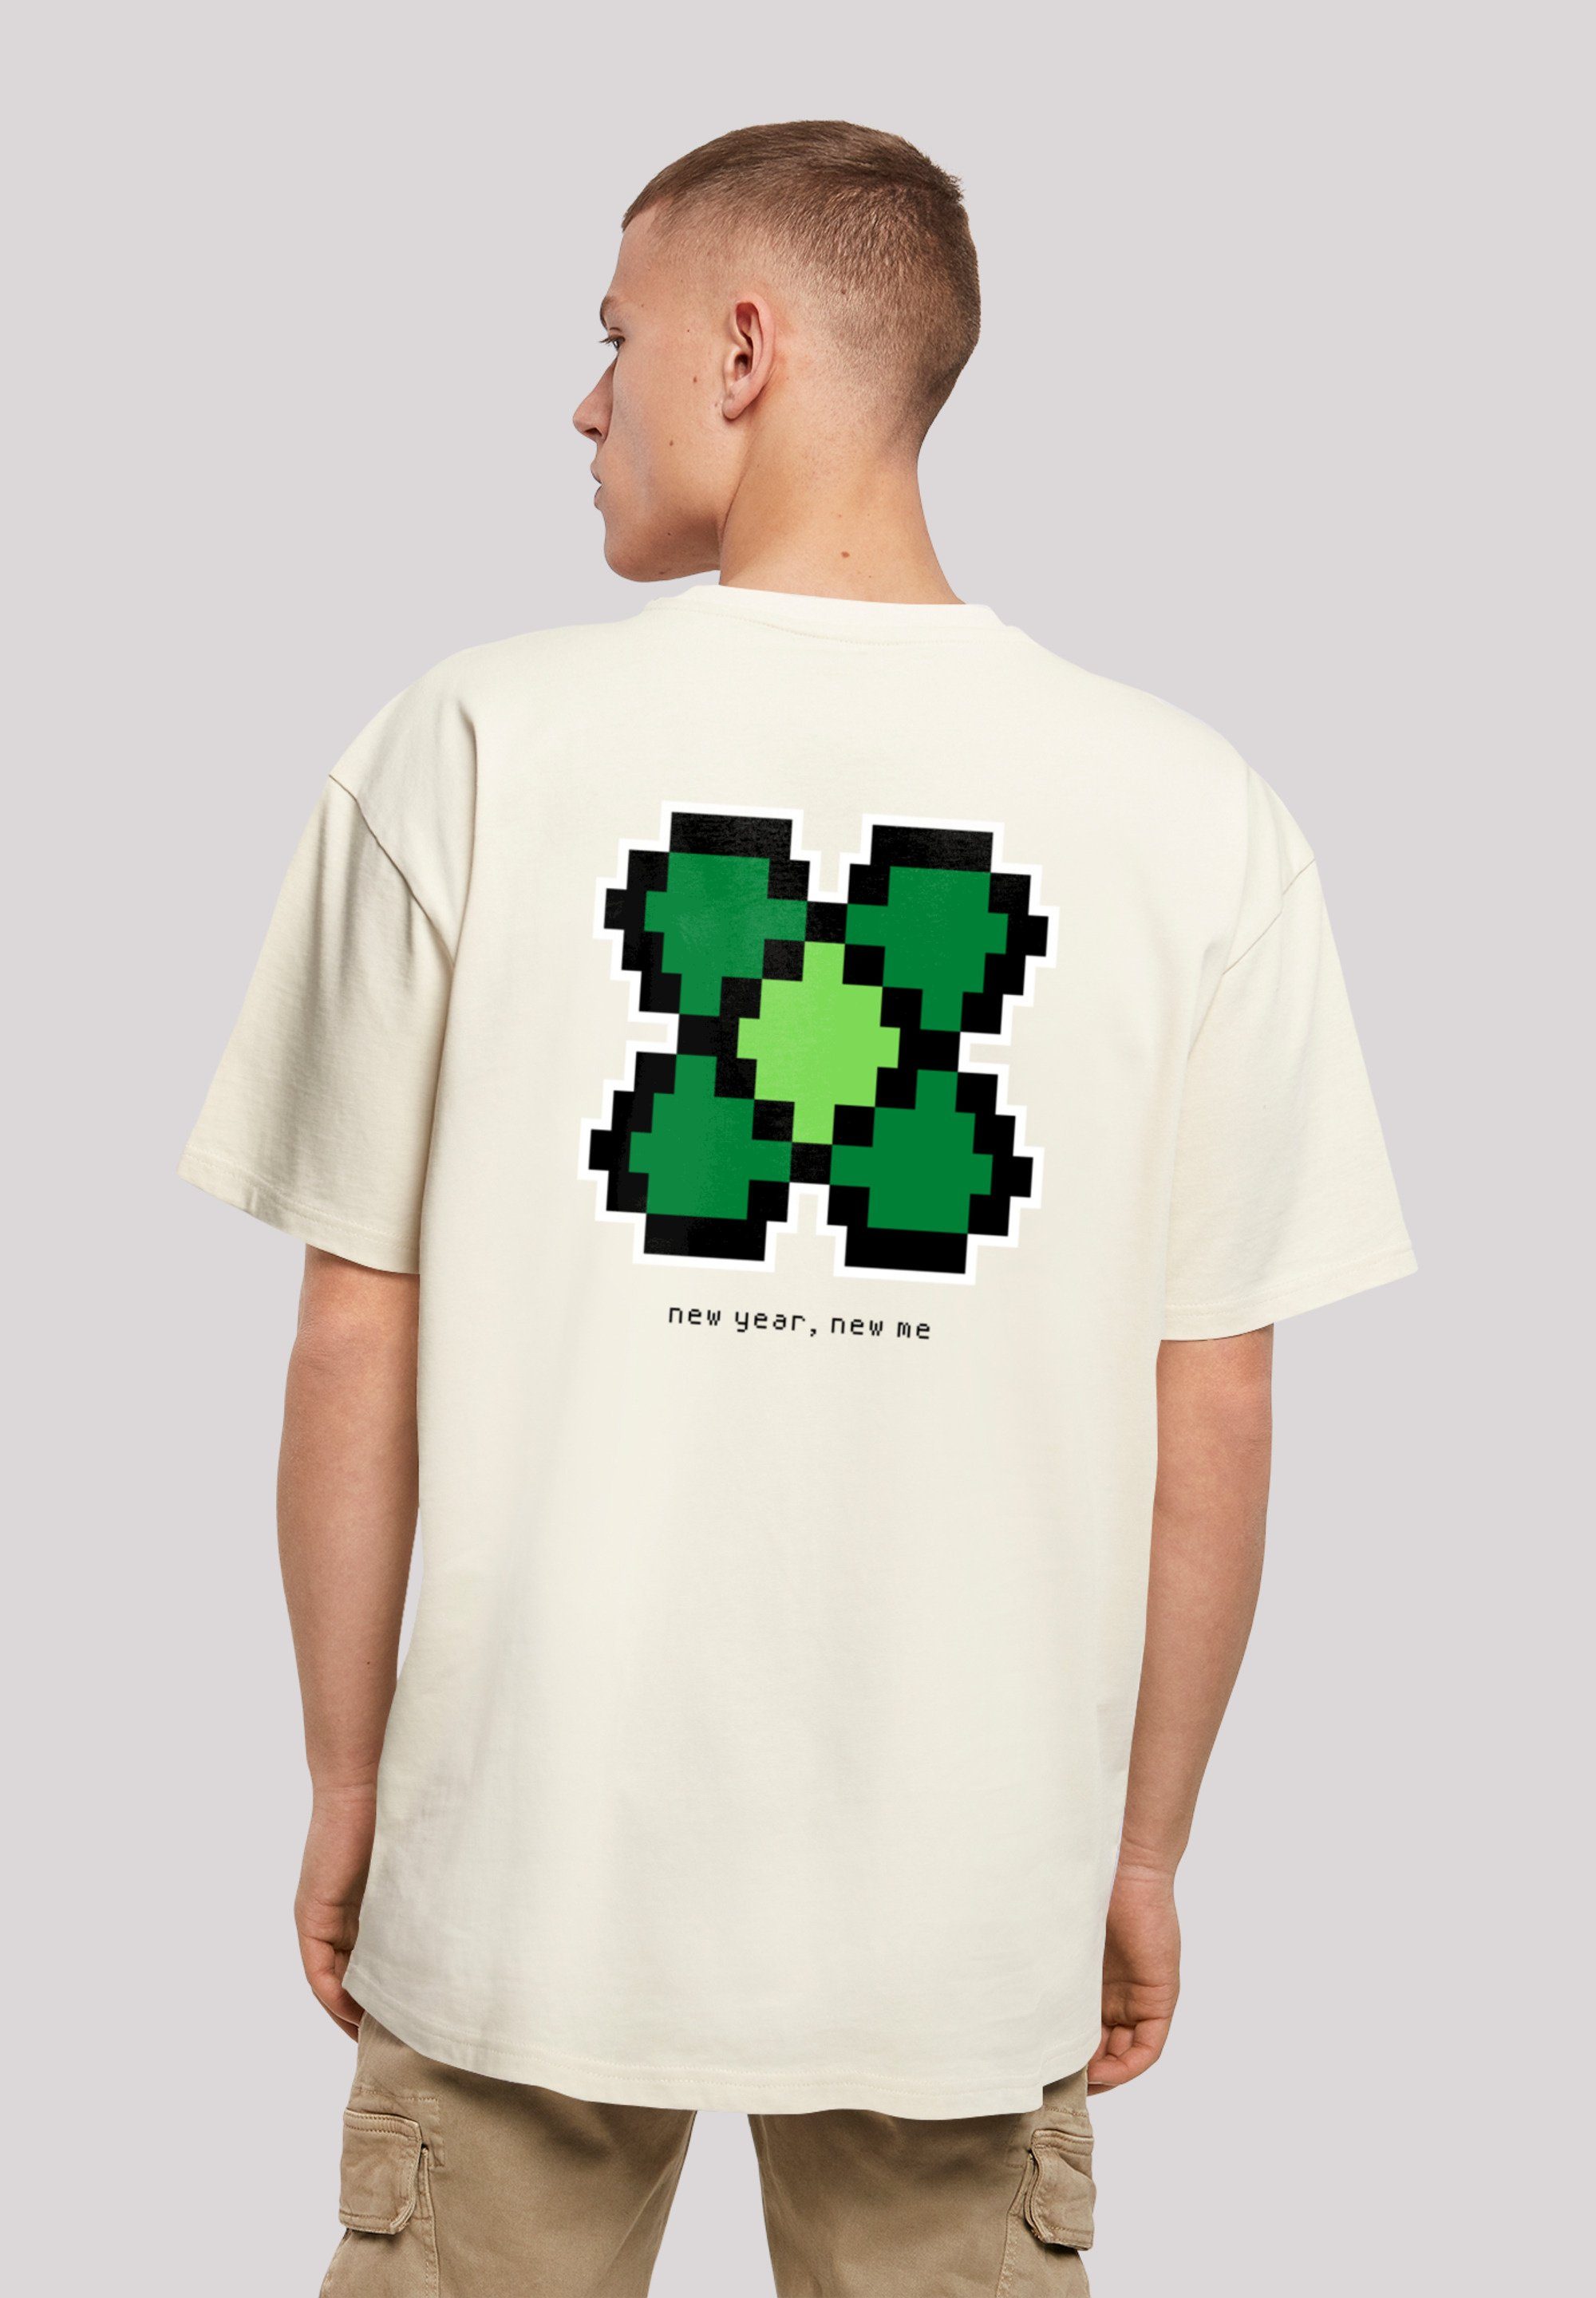 Silvester Print, New Passform überschnittene T-Shirt Year Kleeblatt Pixel Weite und F4NT4STIC Schultern Happy